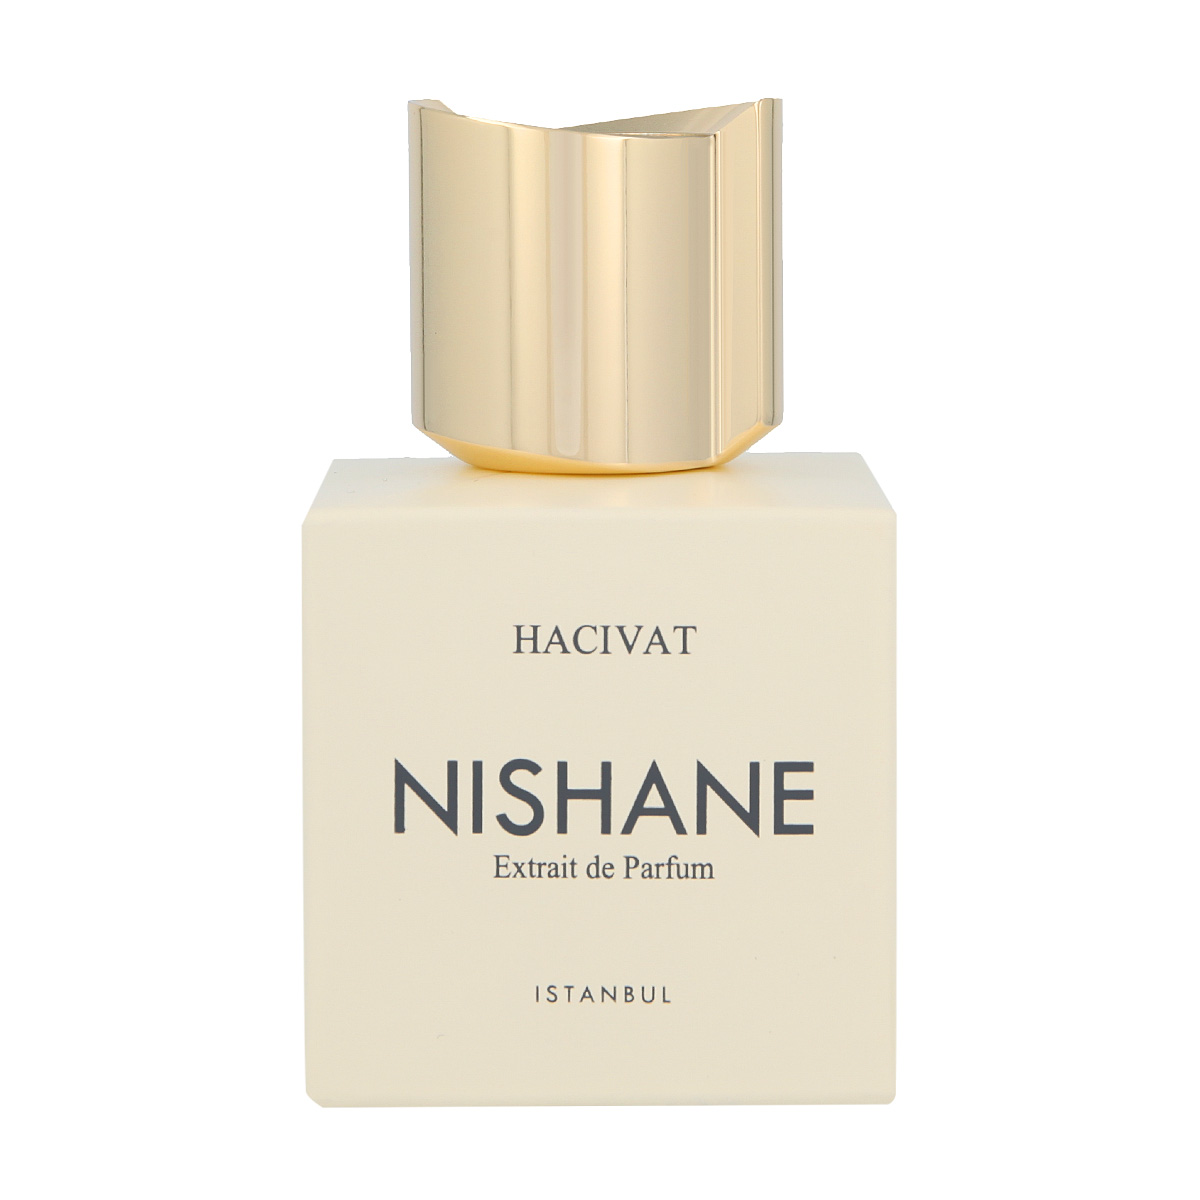 Nishane Hacivat 5 ml NIŠINIAI kvepalų mėginukas (atomaizeris) Unisex Parfum